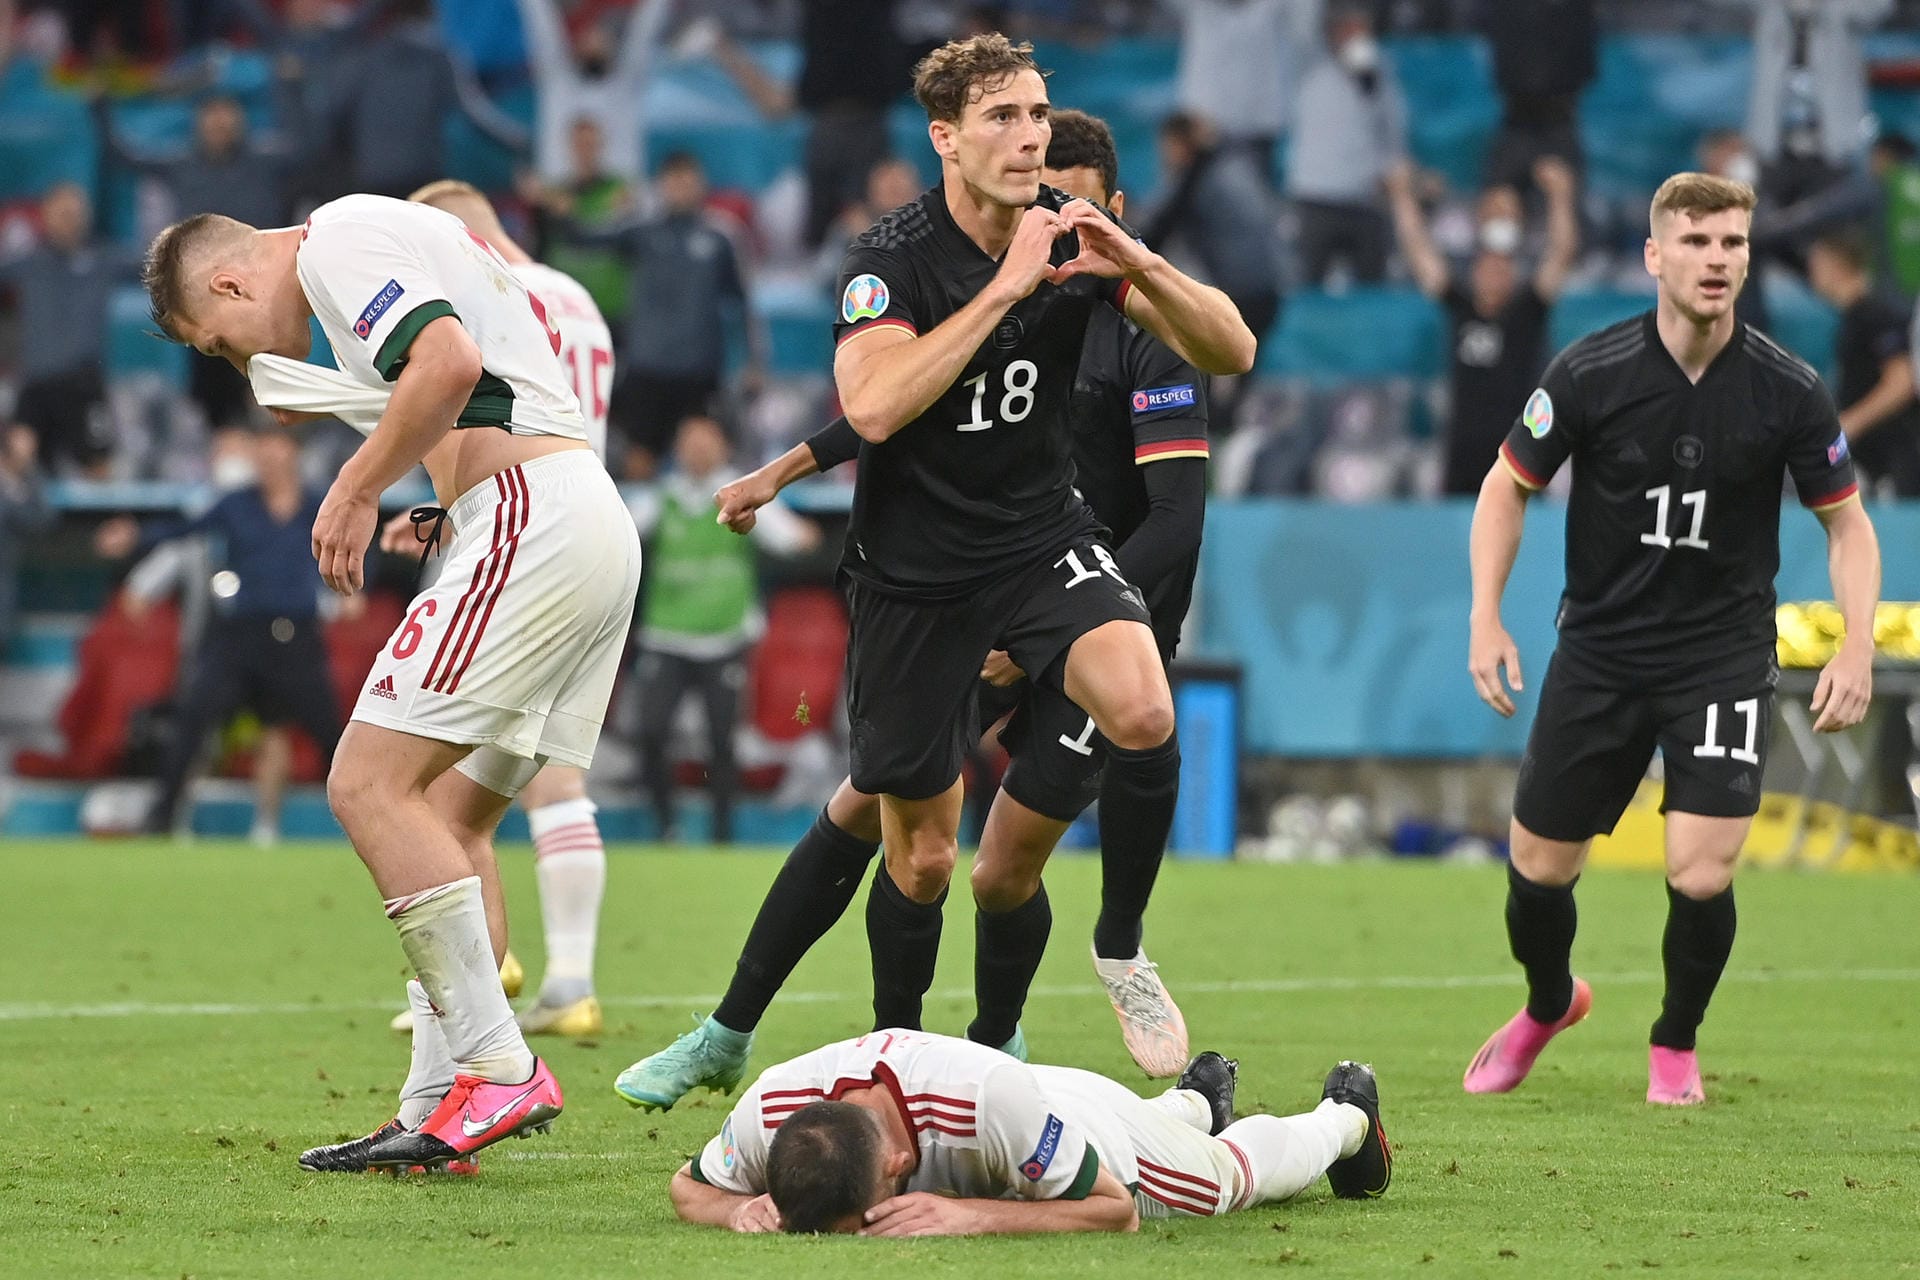 Ebenso wie der Torjubel von DFB-Spieler Leon Goretzka. Nach seinem Treffer zum 2:2 gegen Ungarn formte er ein Herz und zeigte dieses dem ungarischen Fanblock. Später schrieb er auf Instagram dazu: "Verteilt Liebe. Ja!!!!!".